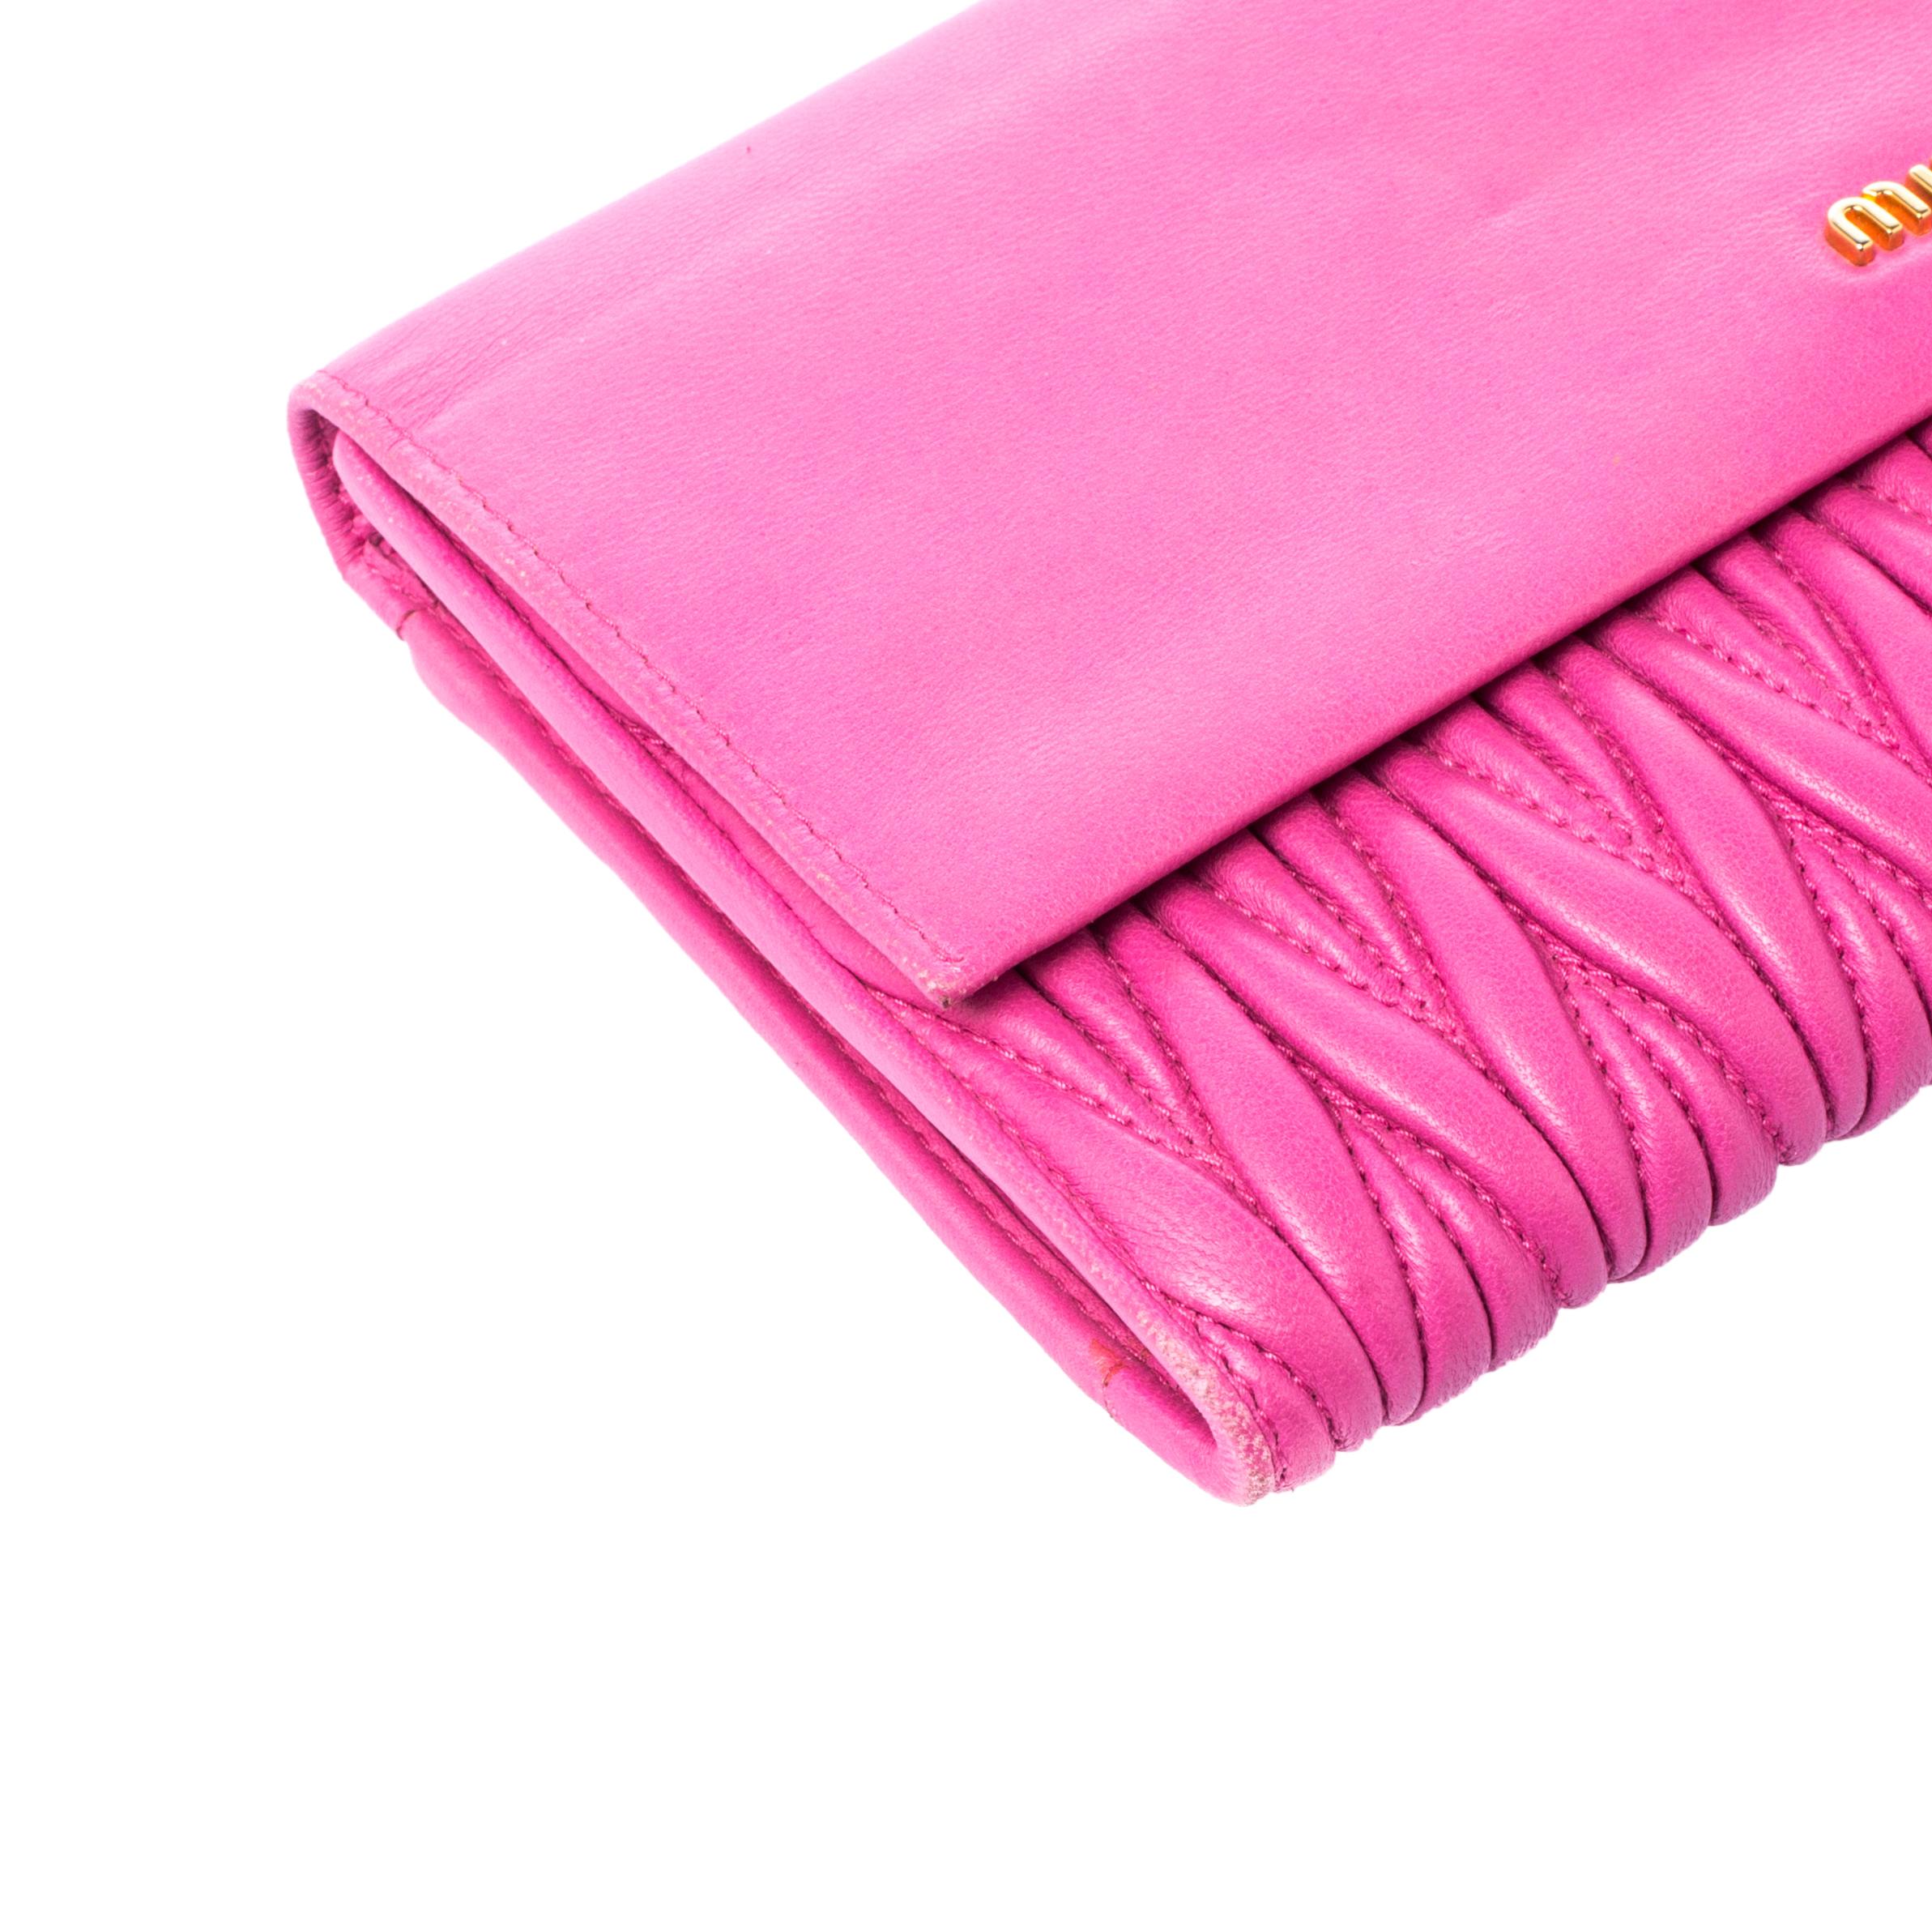 Miu Miu Pink Matelasse Leather Flap Clutch 2